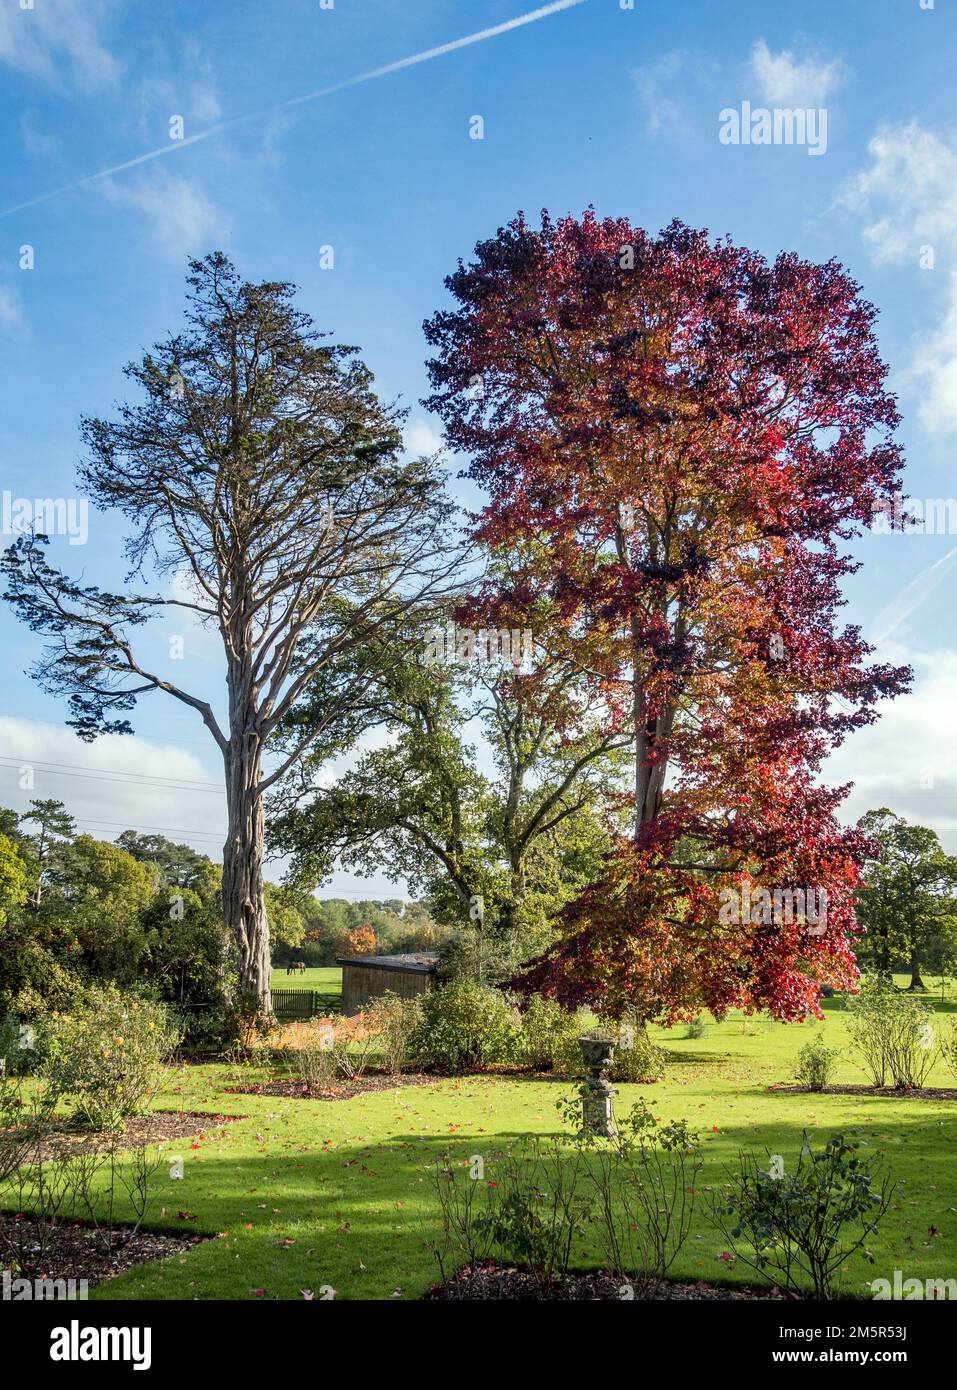 Royaume-Uni, Angleterre, Devonshire. Un Liquidamber ou un Sweetgum américain (à droite) montrant les couleurs de l'automne dans un jardin du Devon. Banque D'Images